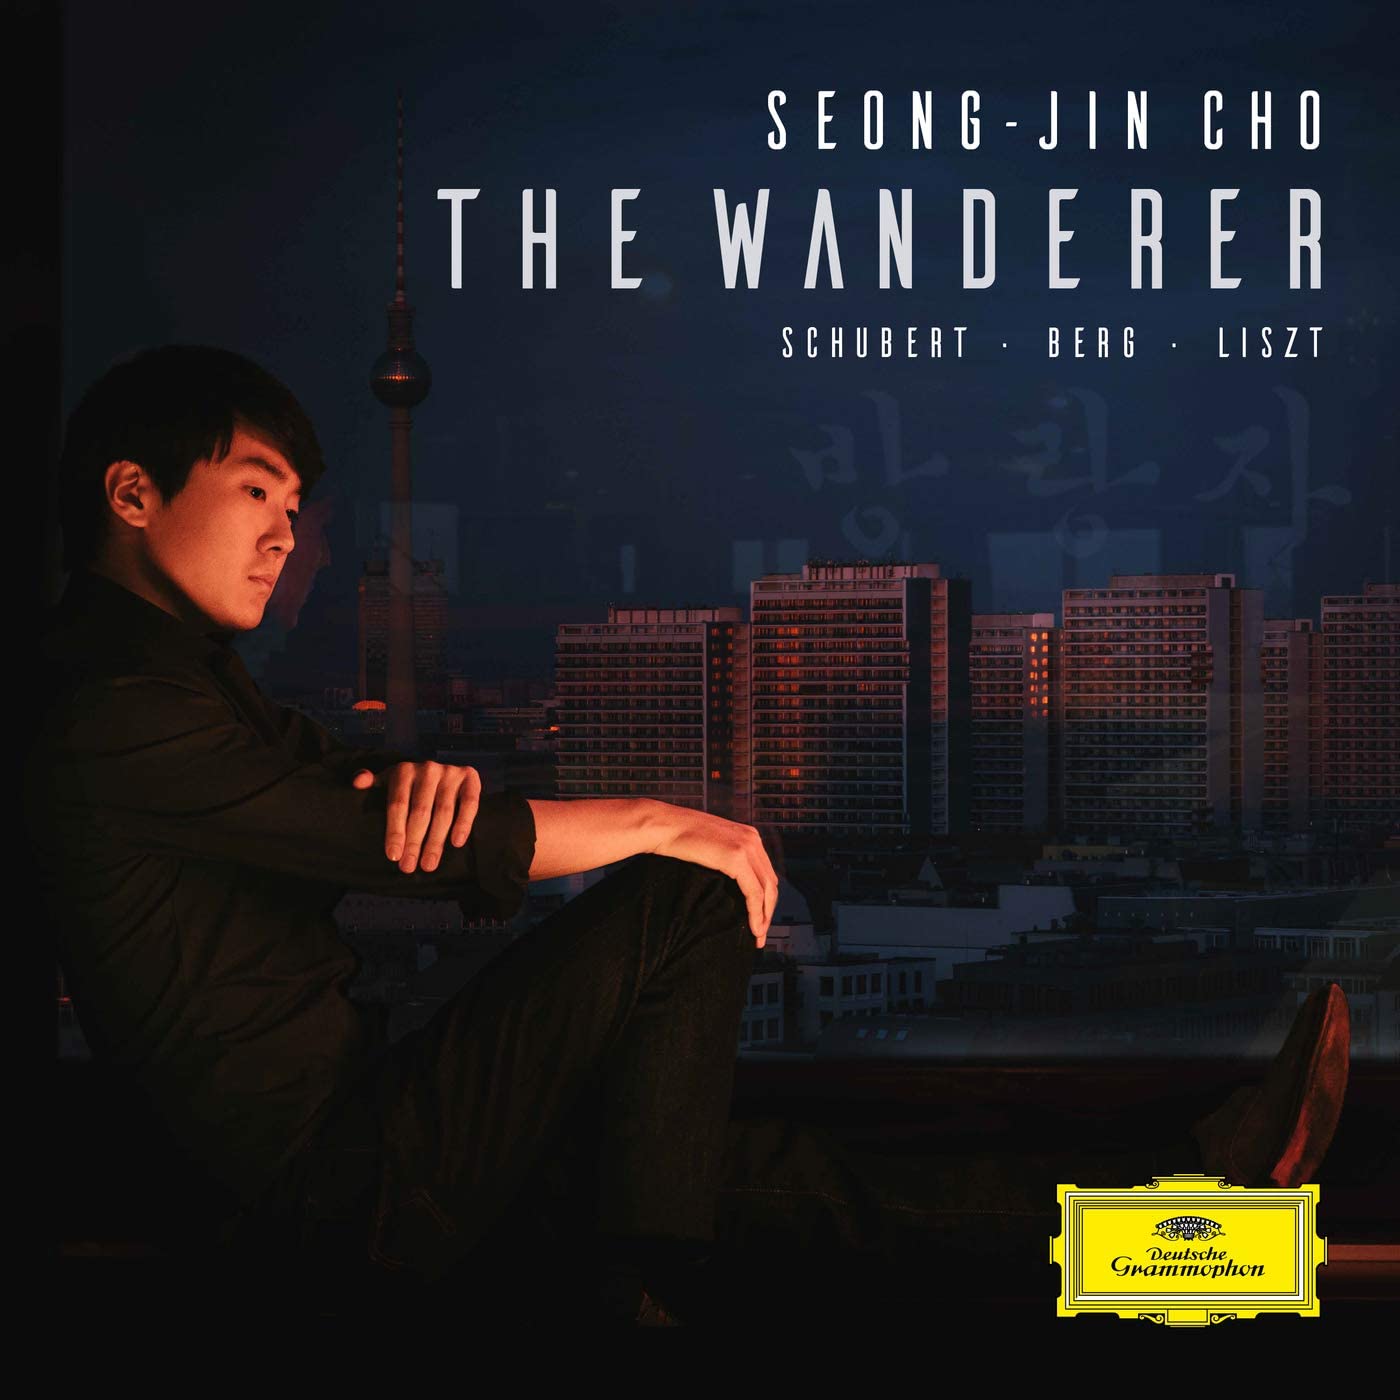 The Wanderer | Seong-Jin Cho, Franz Schubert, Franz Liszt